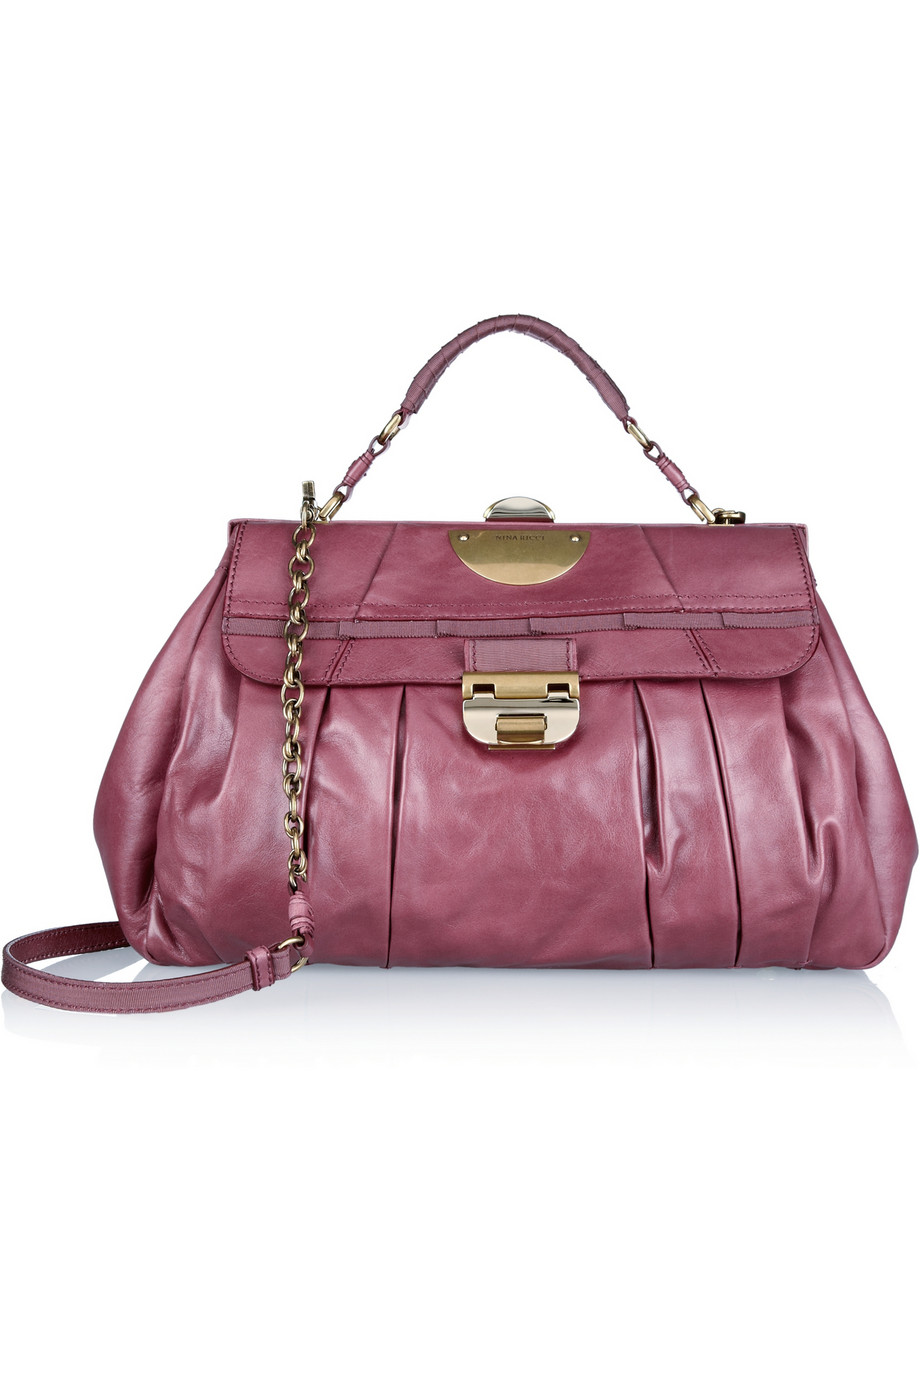 Nina Ricci Grosgrain trimmed Leather Shoulder Bag in Burgundy (Pink) - Lyst